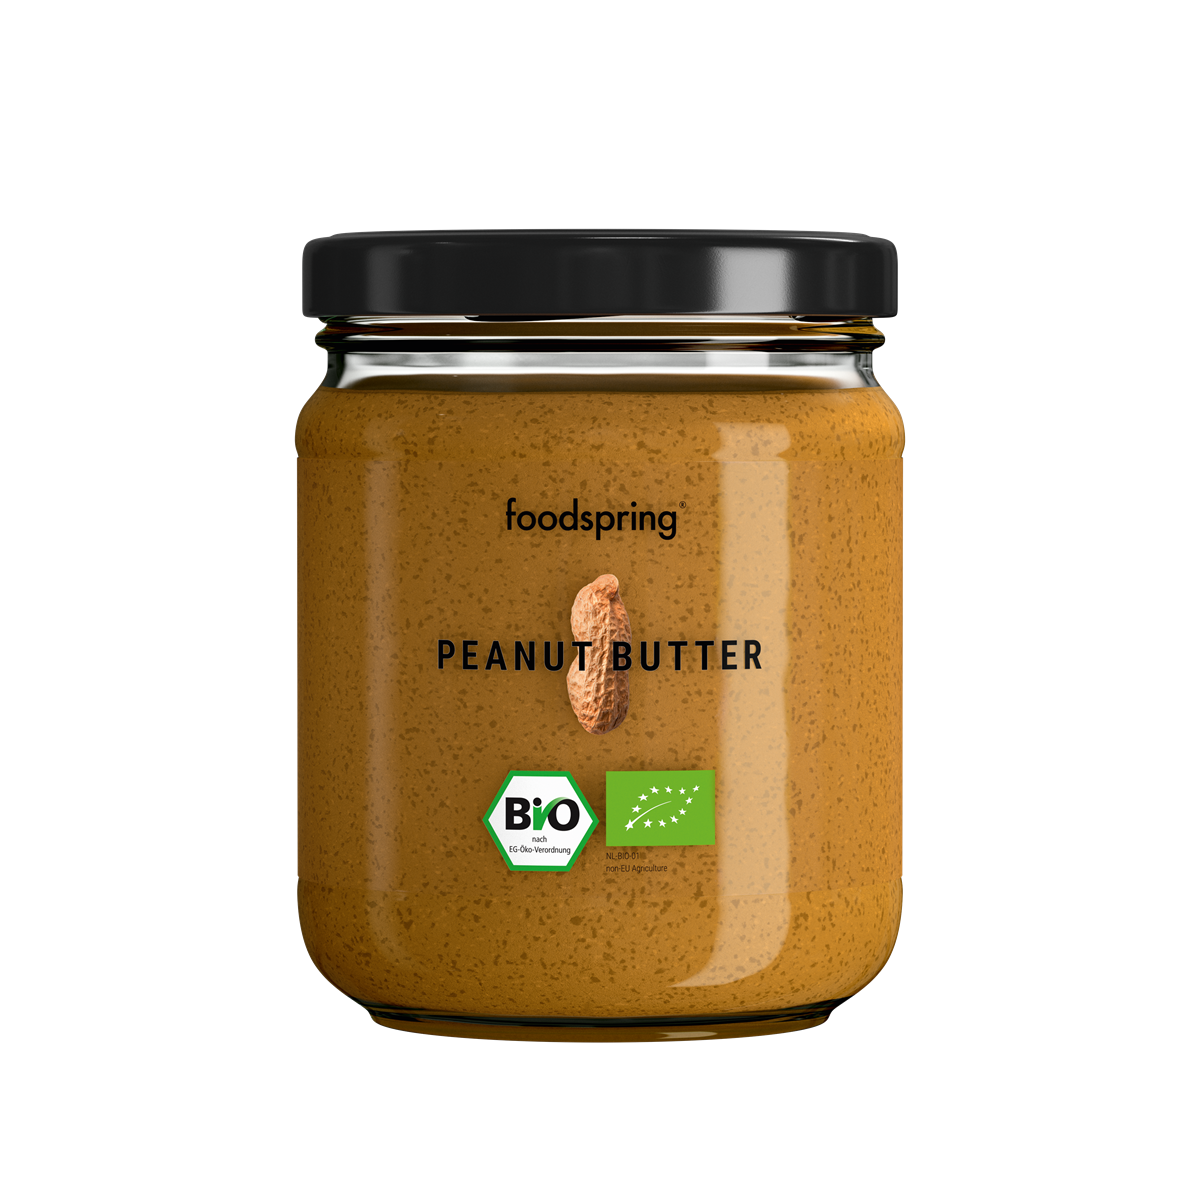 foodspring_Peanut Butter_EUR 4,99